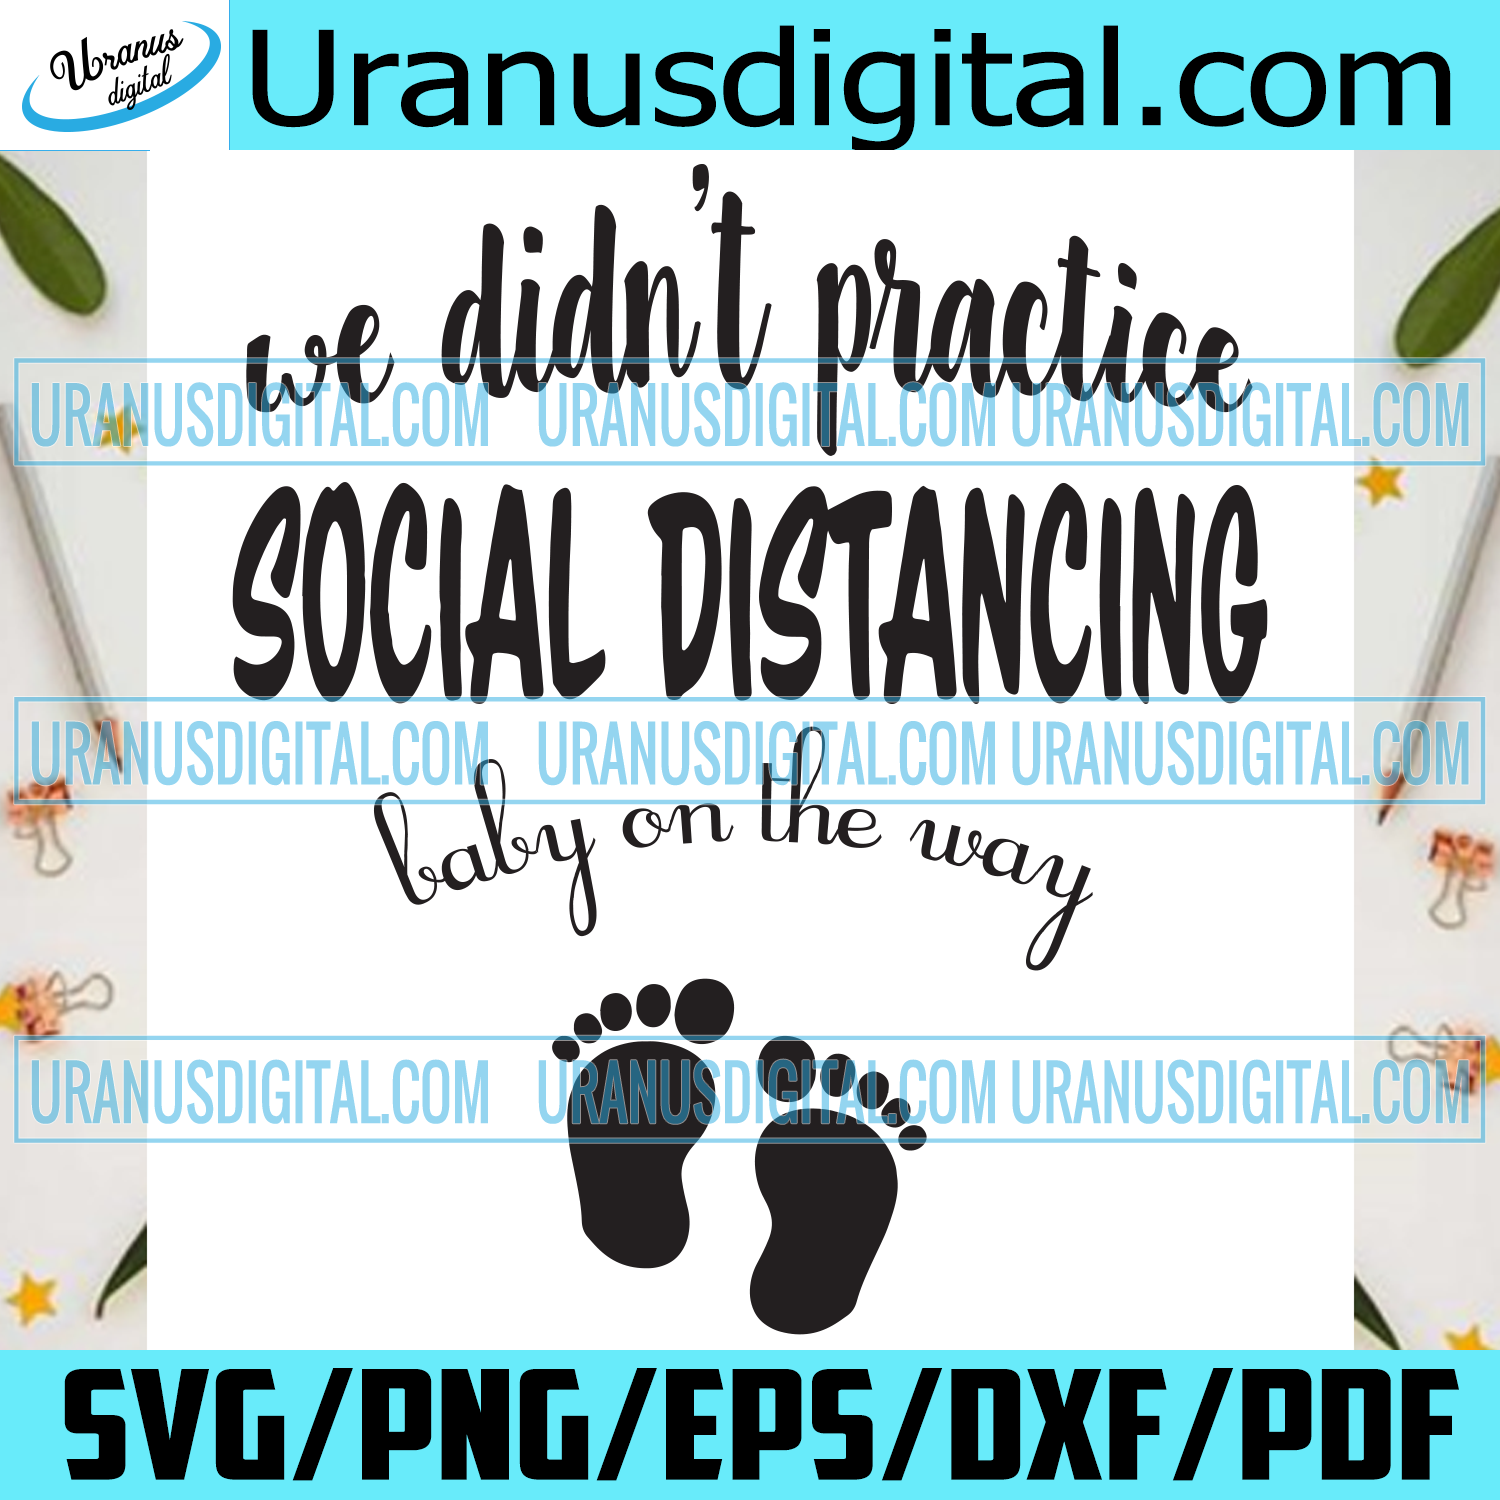 Download We Didnt Practice Social Distancing Svg Trending Svg Baby On The Way Uranusdigital